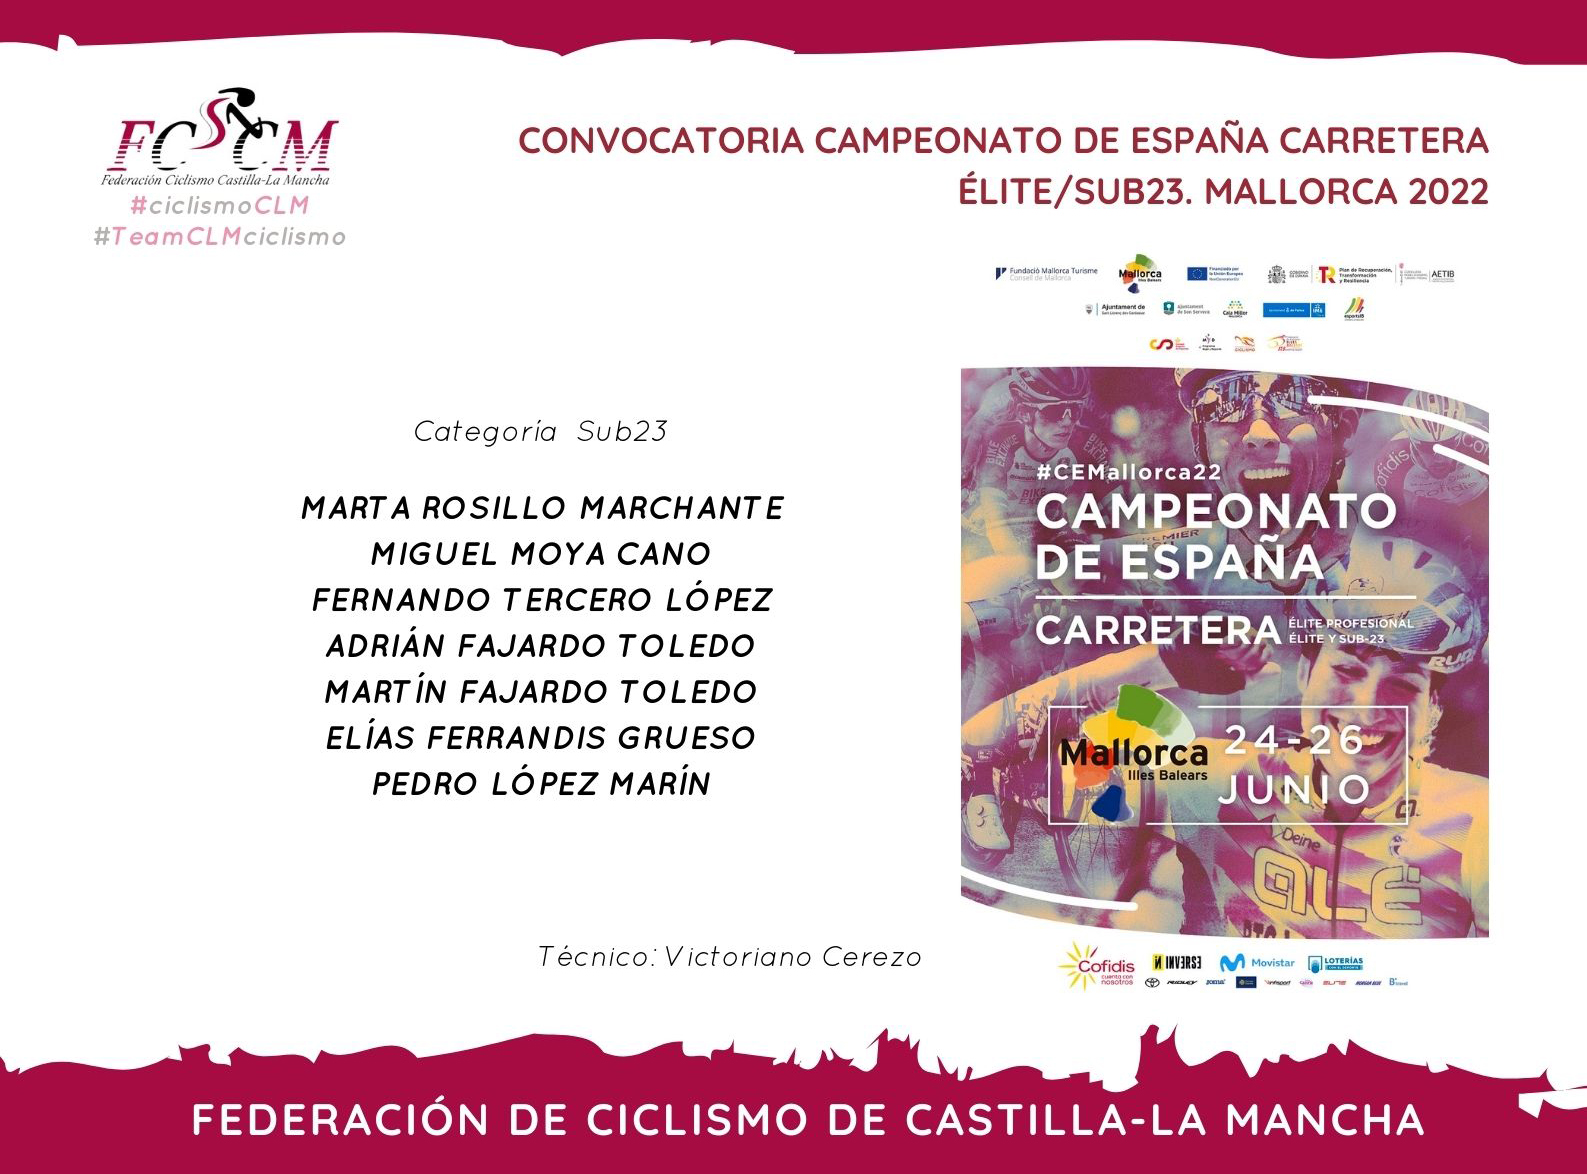 Siete ciclistas integran la selección de Castilla-La Mancha para el Campeonato de España de Carretera Élite-Sub23 de Mallorca 2022